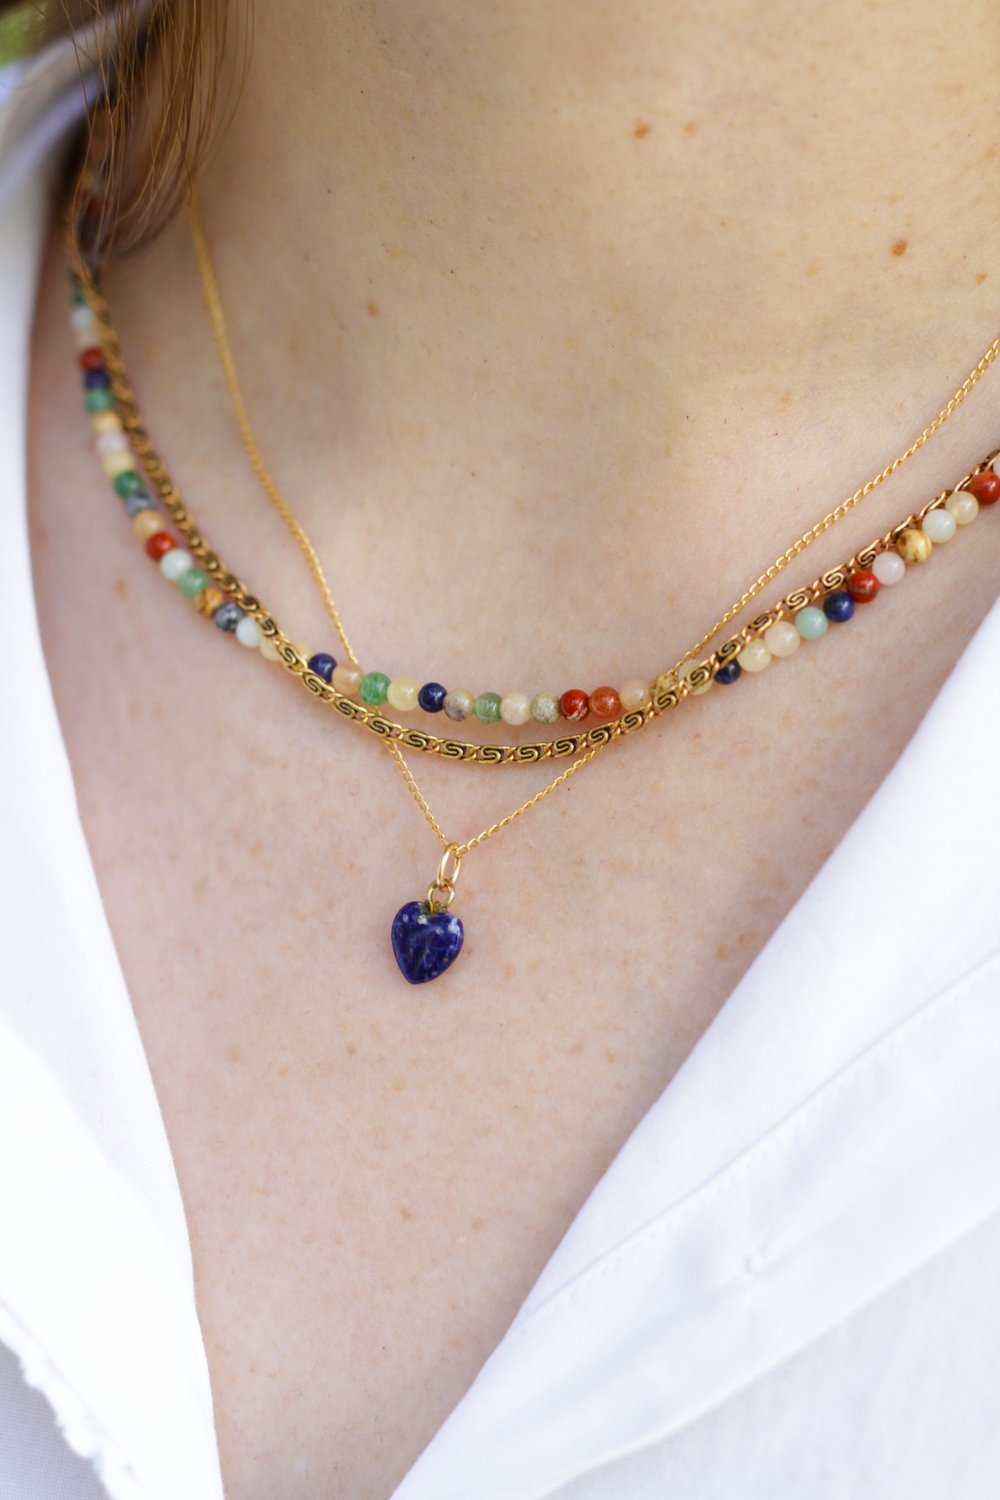 16" Petite Necklace with Antique Lapis Heart Pendant